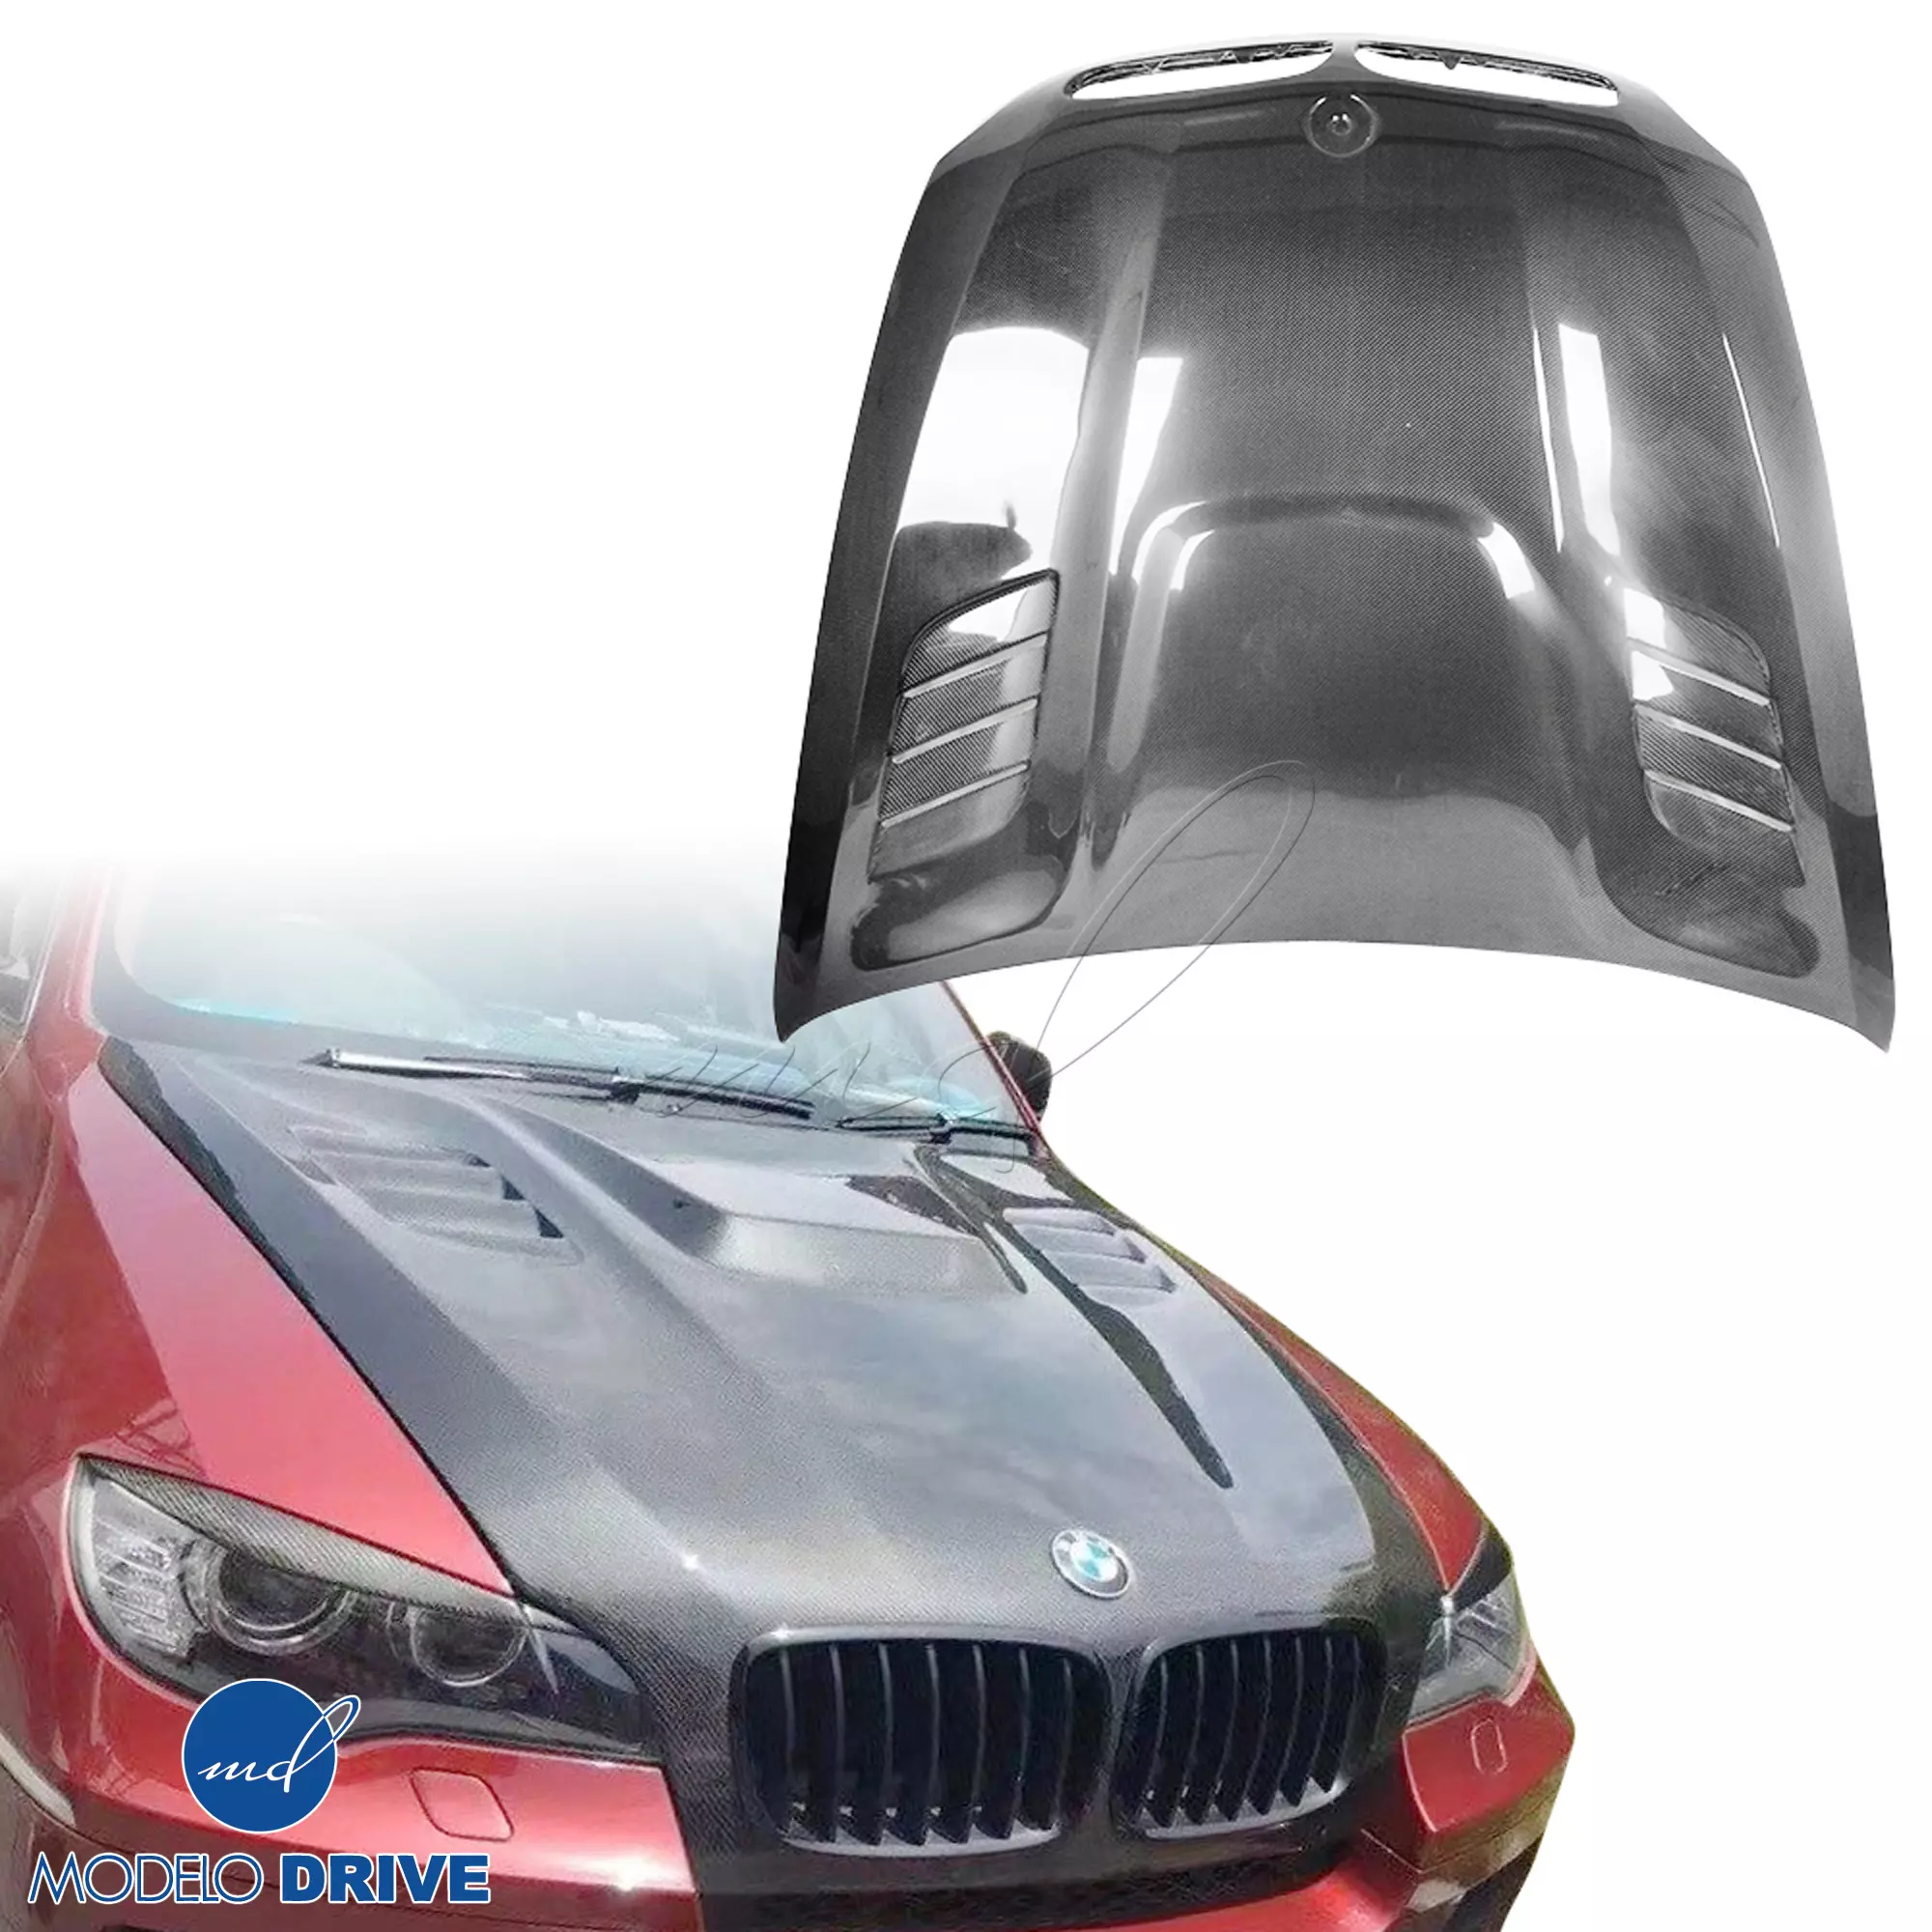 ModeloDrive Carbon Fiber VORT Hood > BMW X6 E71 2008-2014 - Image 6